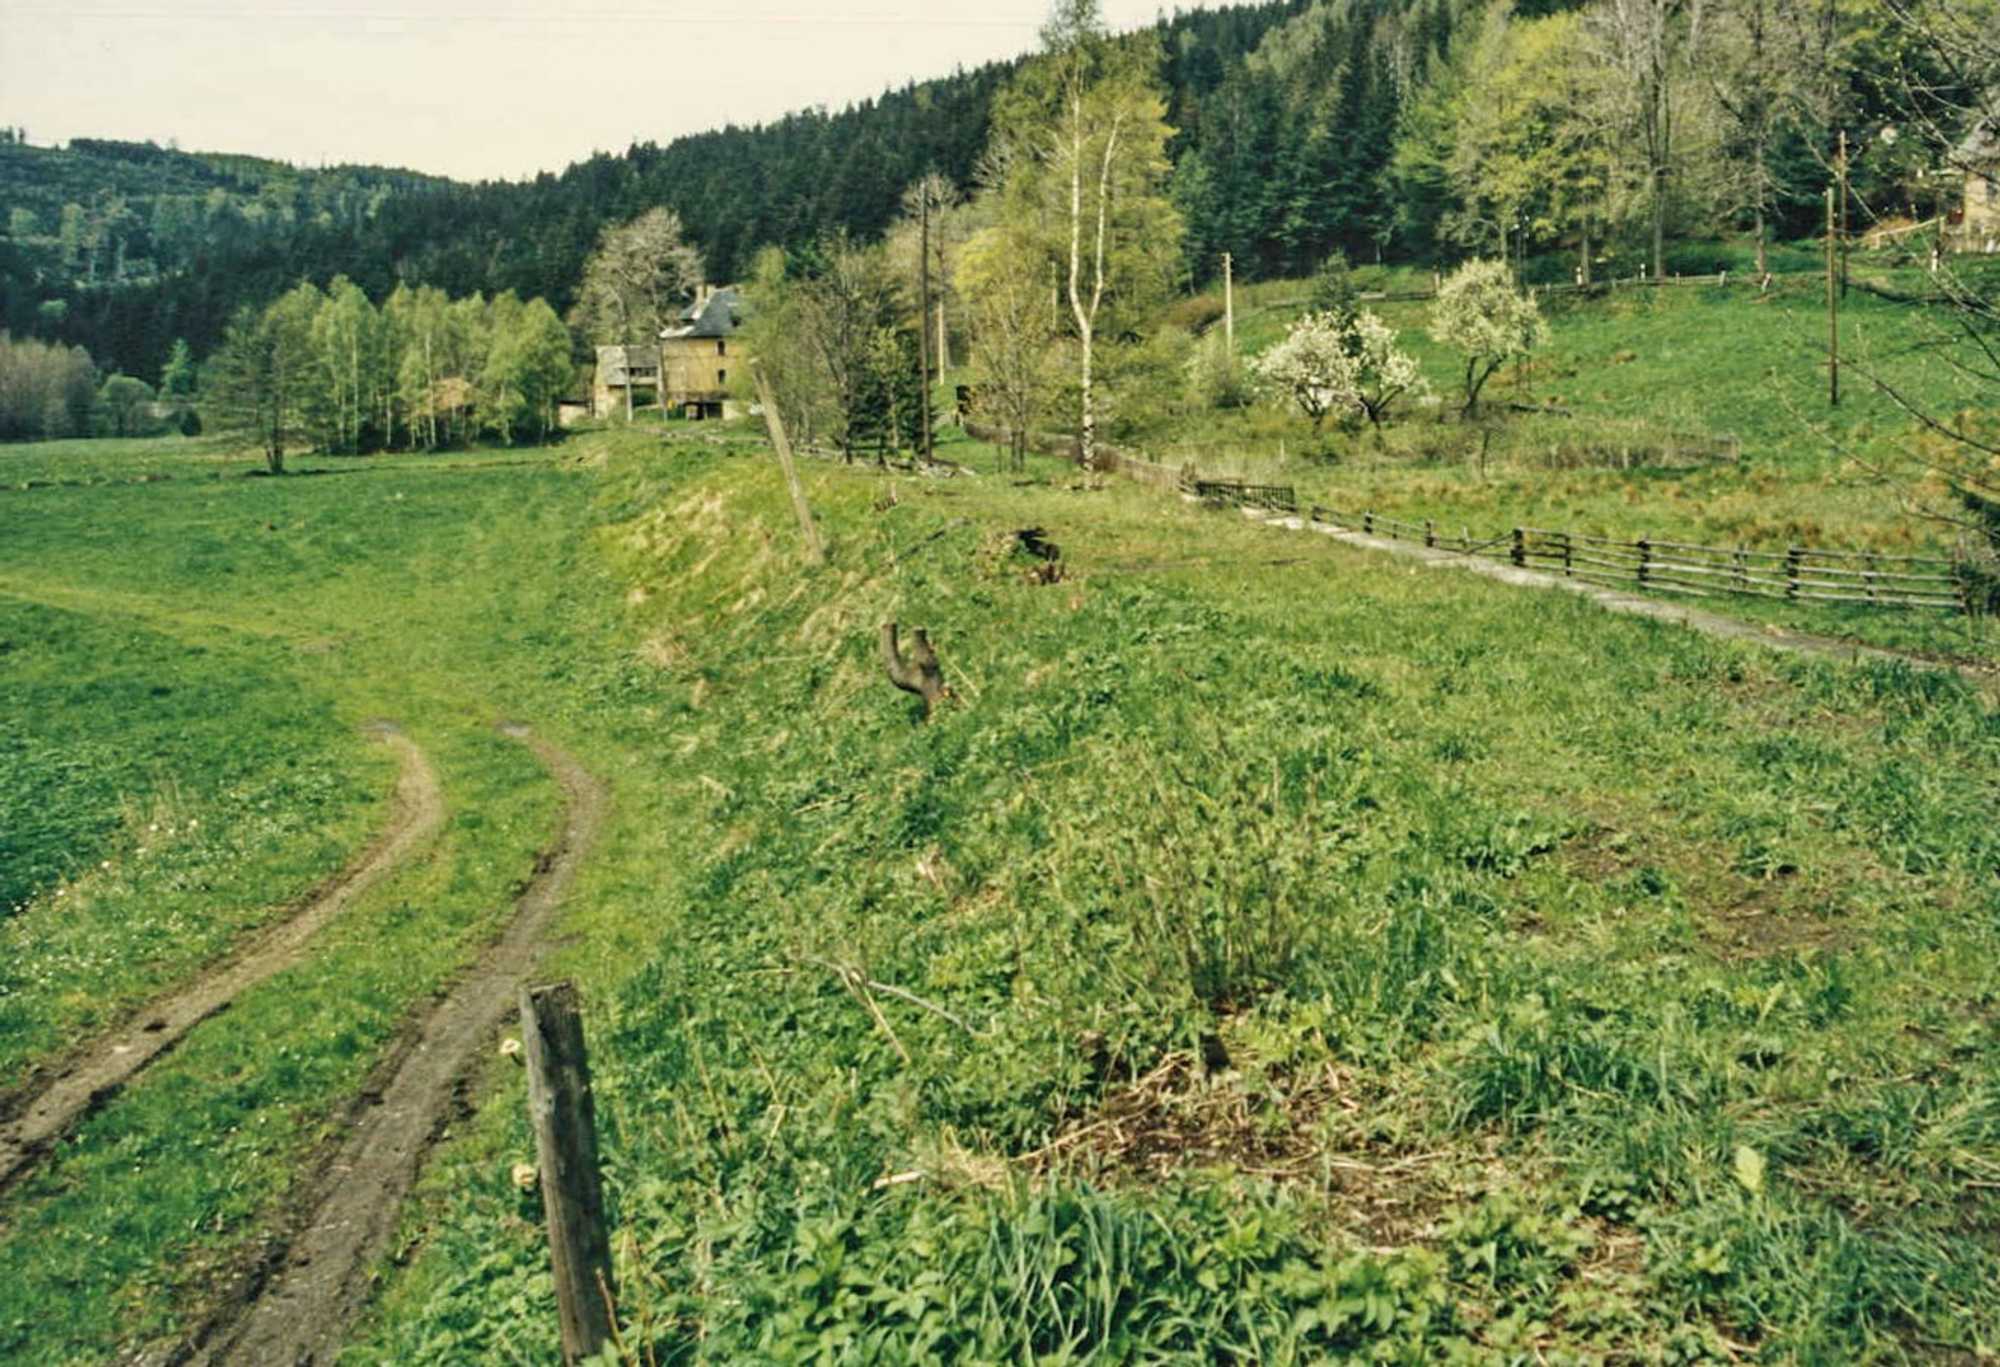 Mai 1995: Blick entlang des Bahndammes von Schmalzgrube aus in Richtung des „Forellenhofes“, der durch die kleine Baumgruppe an der Halde auf halbem Wege verdeckt wird.